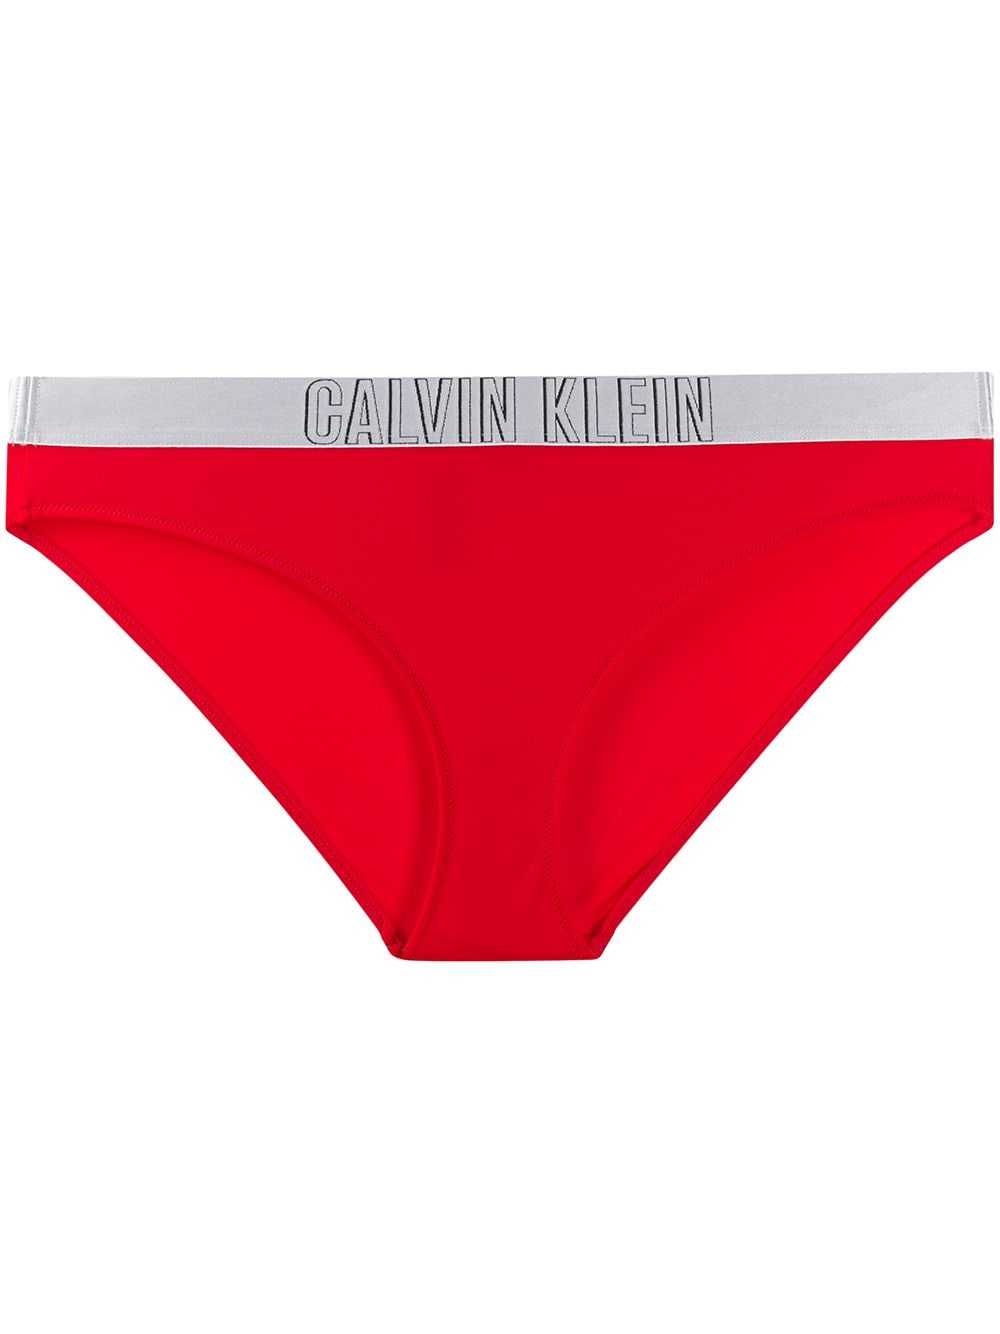 Calvin Klein плавки бикини с логотипом от Calvin Klein